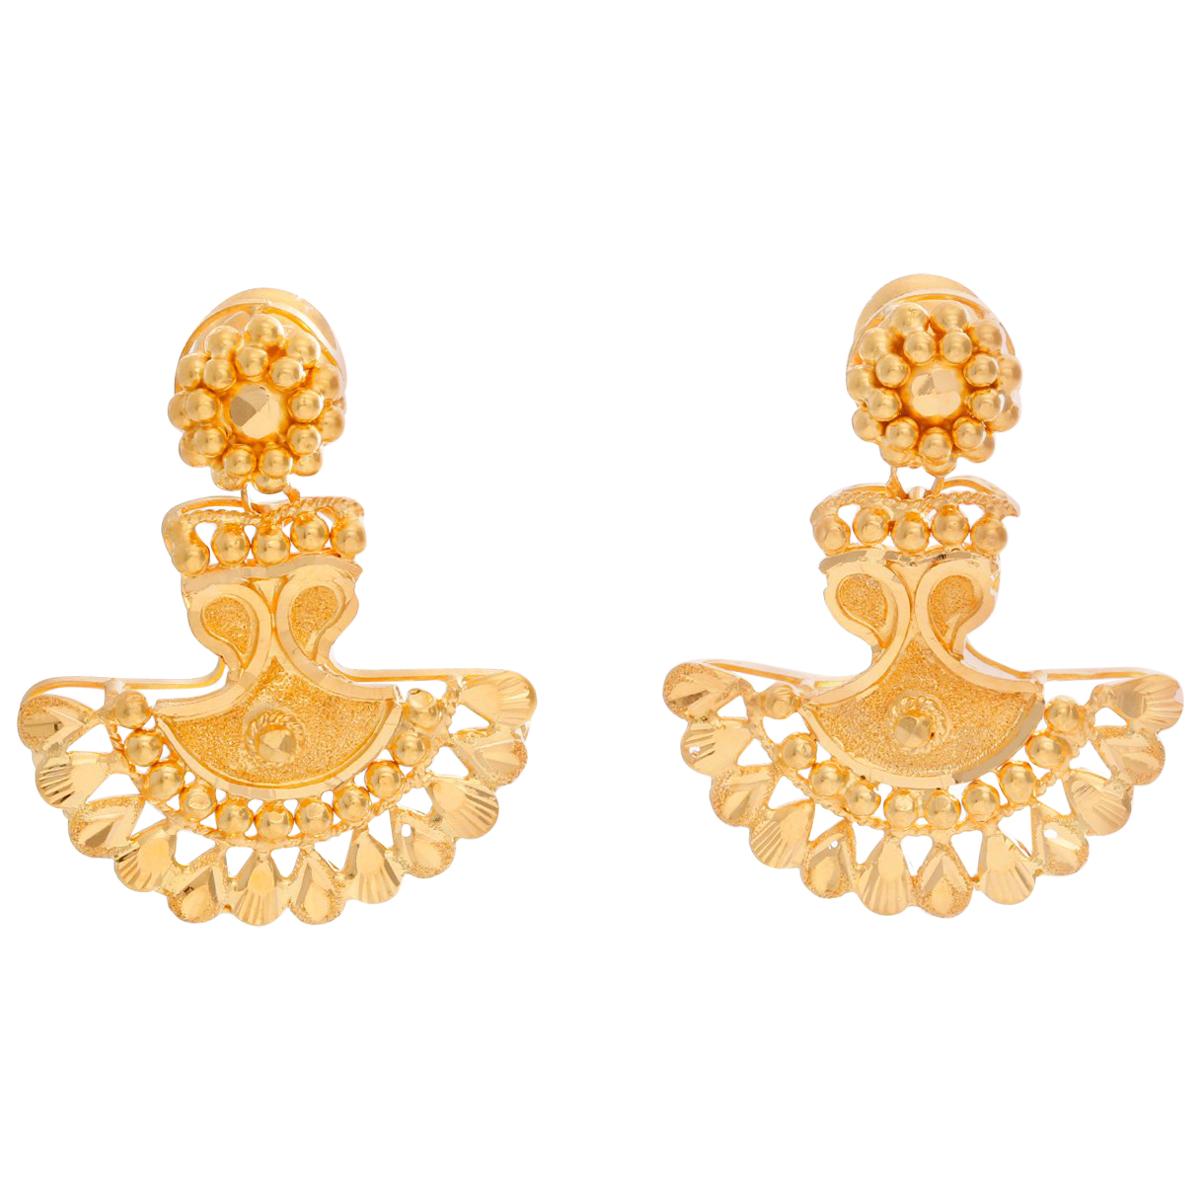 Boucles d'oreilles indiennes en or jaune 22 carats